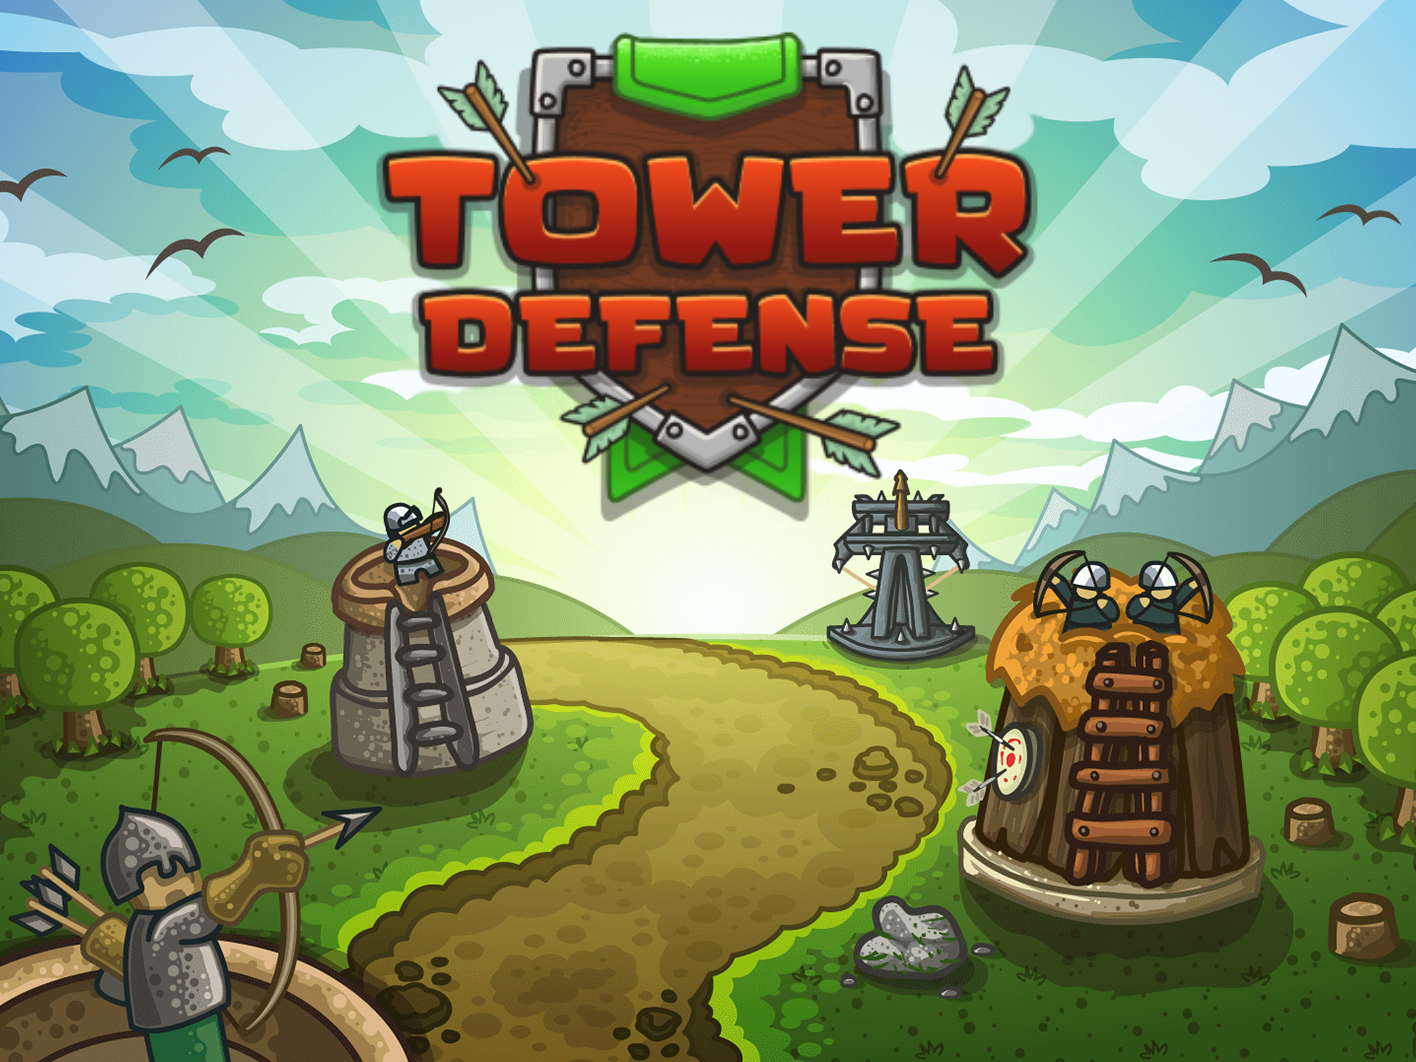 Играть защита 1. Tower Defense башни. Игра Tower Defense 1. Tower Defense башенки. Оборона башни / Tower Defense.